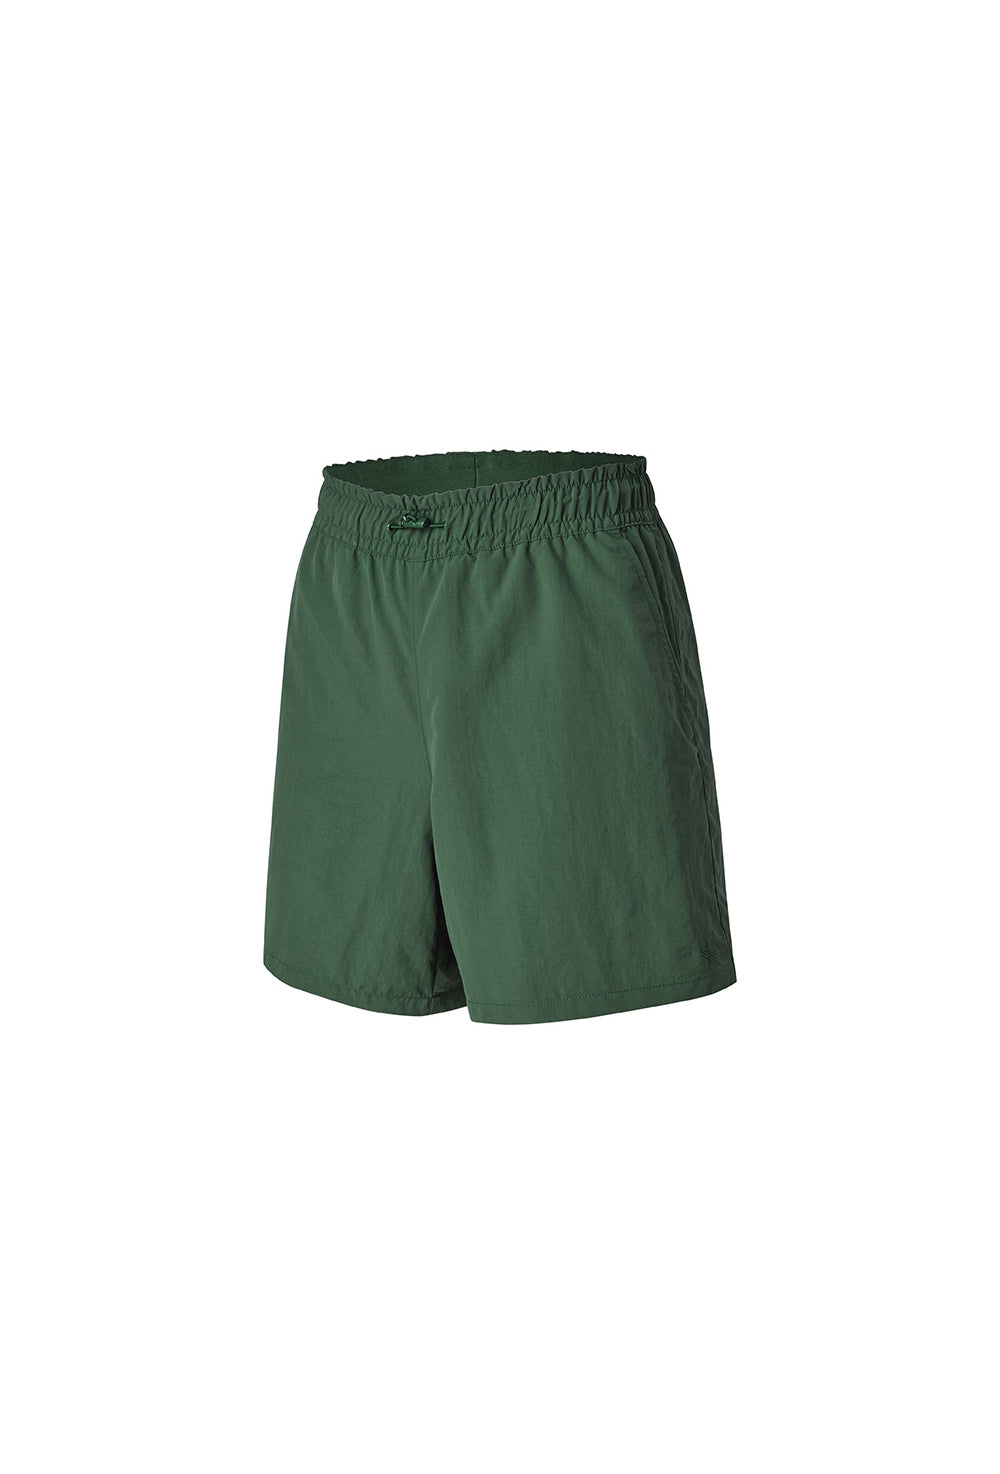 Basic Woven Half Shorts - Botanical Green (Clearance)